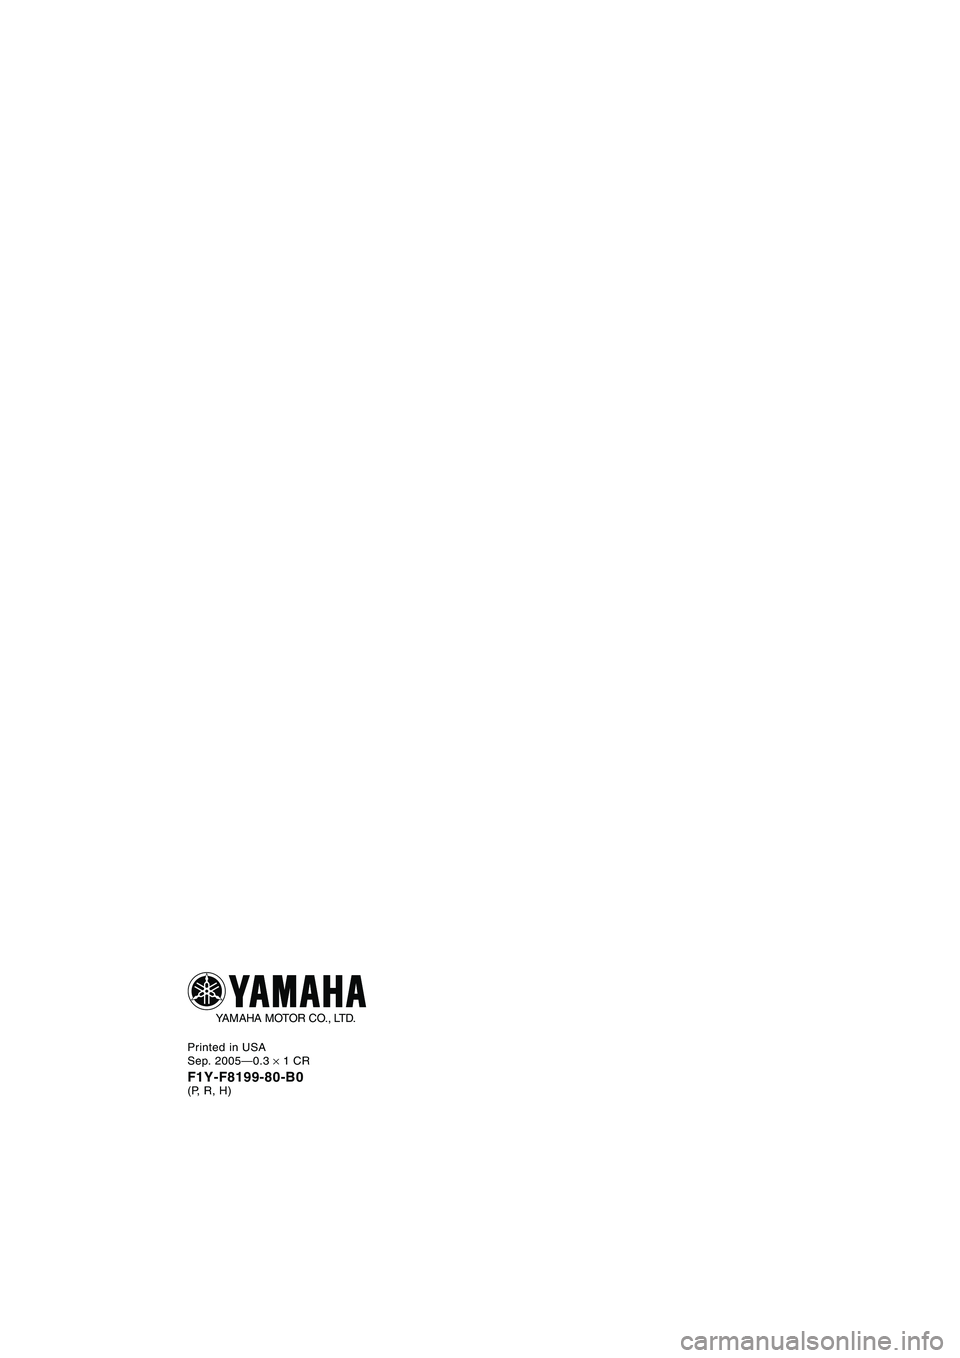 YAMAHA FX CRUISER 2006  Manual de utilização (in Portuguese) Printed in USA
Sep. 2005—0.3 × 1 CR
F1Y-F8199-80-B0(P, R, H)
YAMAHA MOTOR CO., LTD.
B_F1Y80.book  Page 1  Friday, September 2, 2005  3:28 PM 